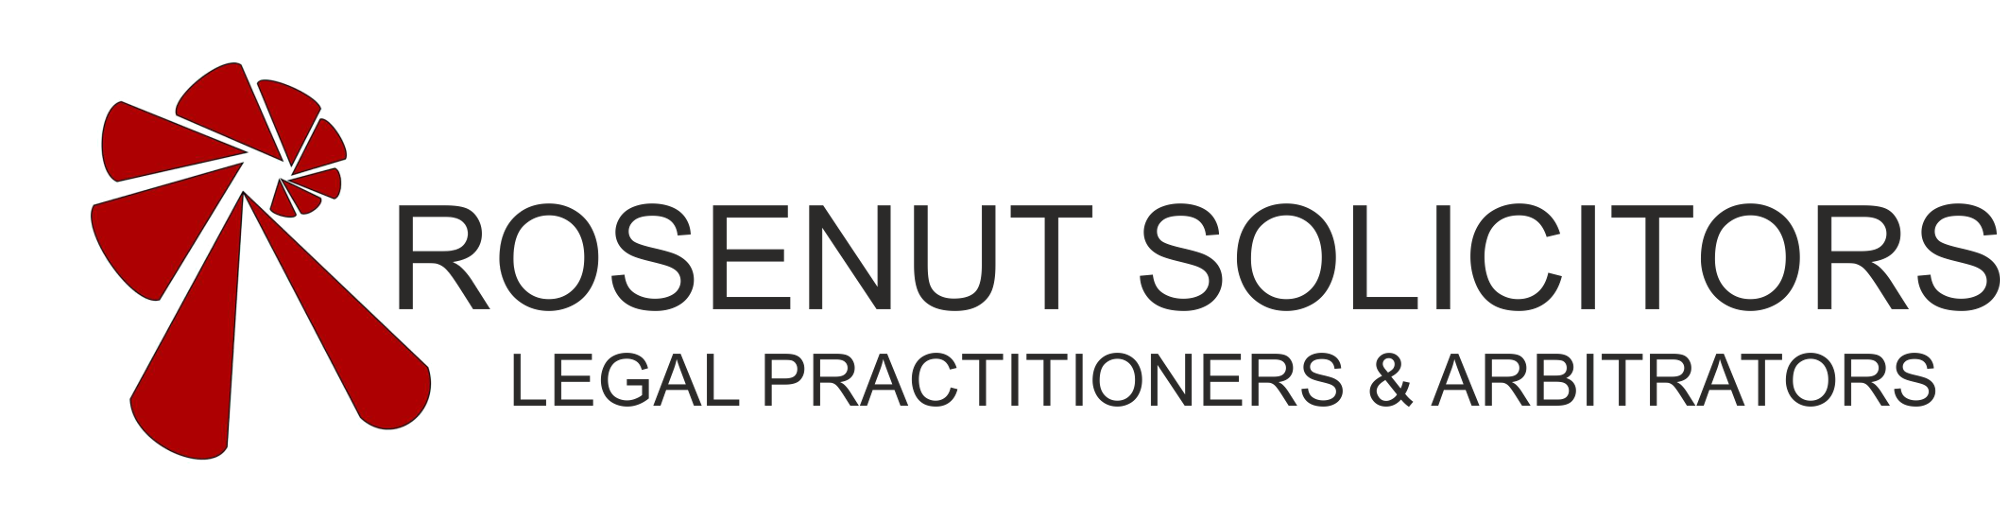 rosenut logo